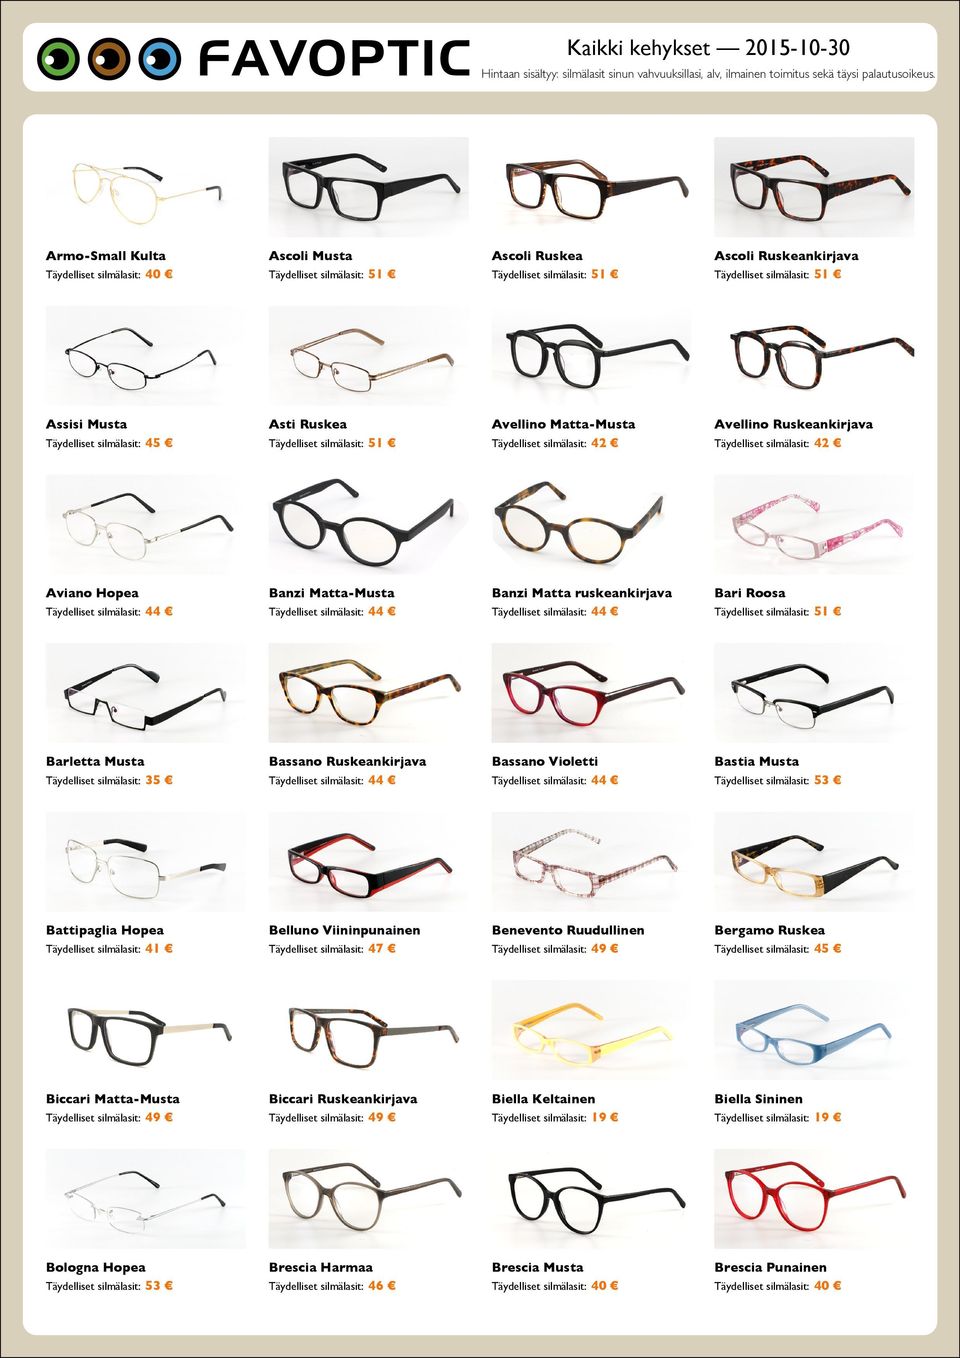 Täydelliset silmälasit: 41 Belluno Viininpunainen Benevento Ruudullinen Bergamo Ruskea Biccari Matta-Musta Biccari Ruskeankirjava Biella Keltainen Täydelliset